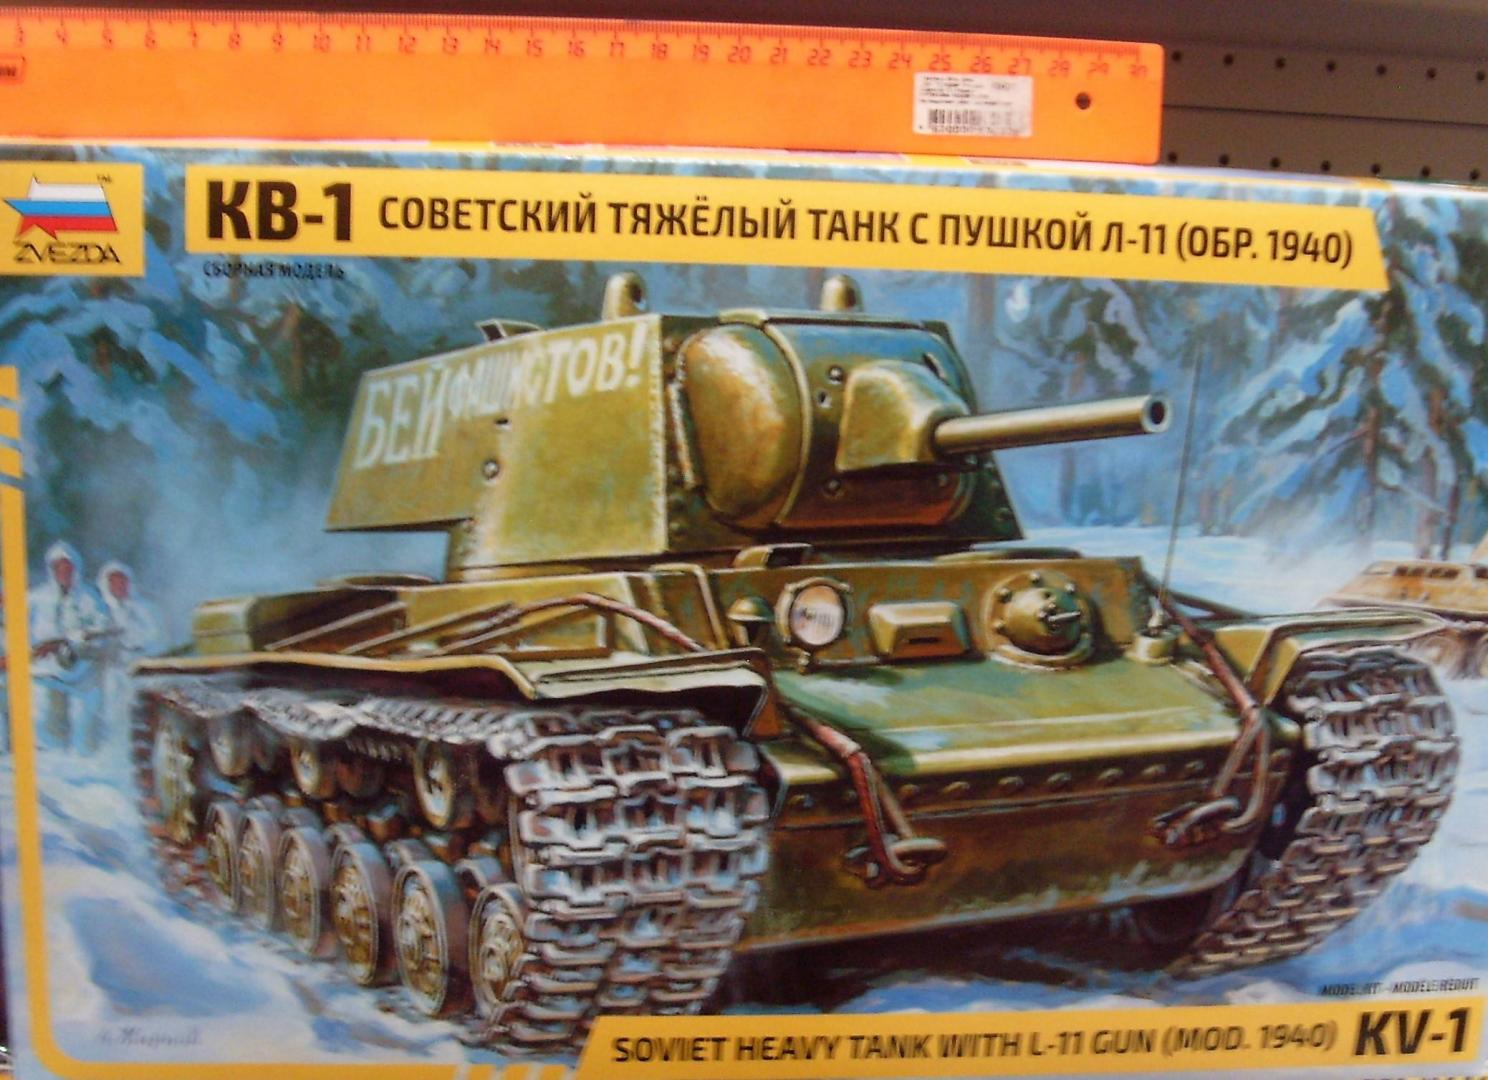 Иллюстрация 8 из 17 для Советский тяжелый танк КВ-1 модель 1940 г. с пушкой Л-11 (3624) | Лабиринт - игрушки. Источник: Соловьев  Владимир